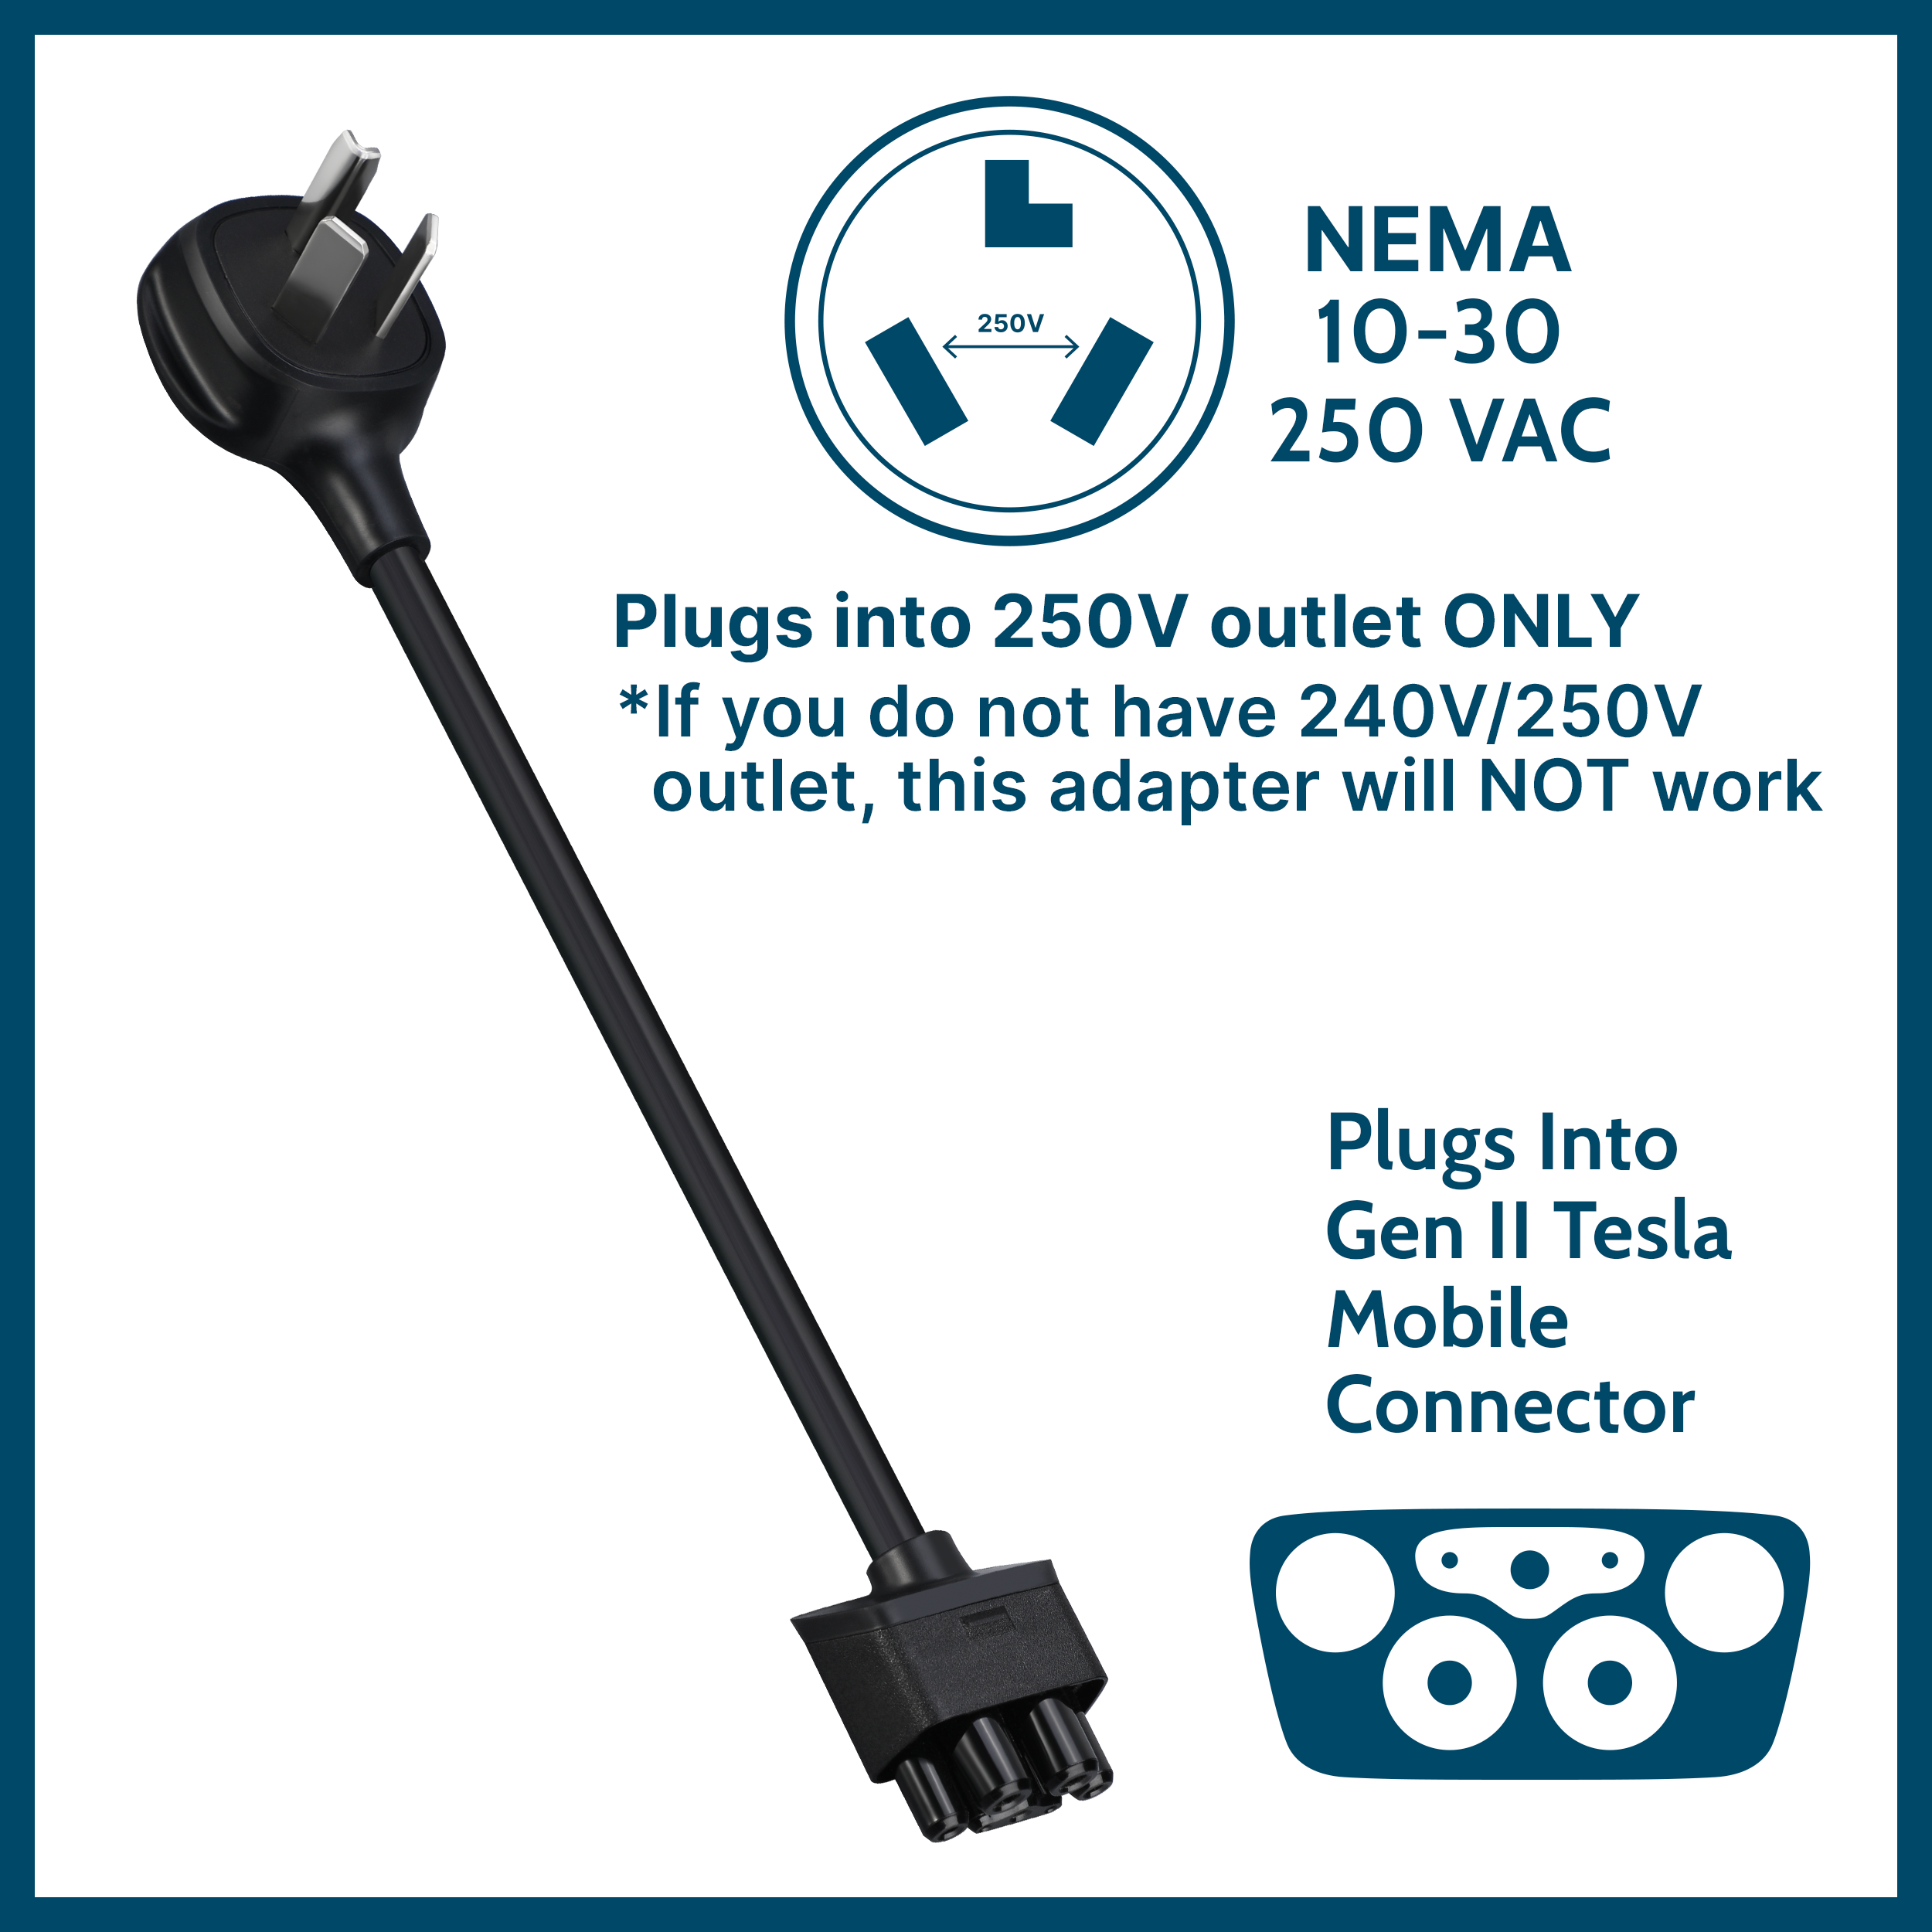 NEMA 10-30 Tesla Mobile Connector Gen 2 Adapter